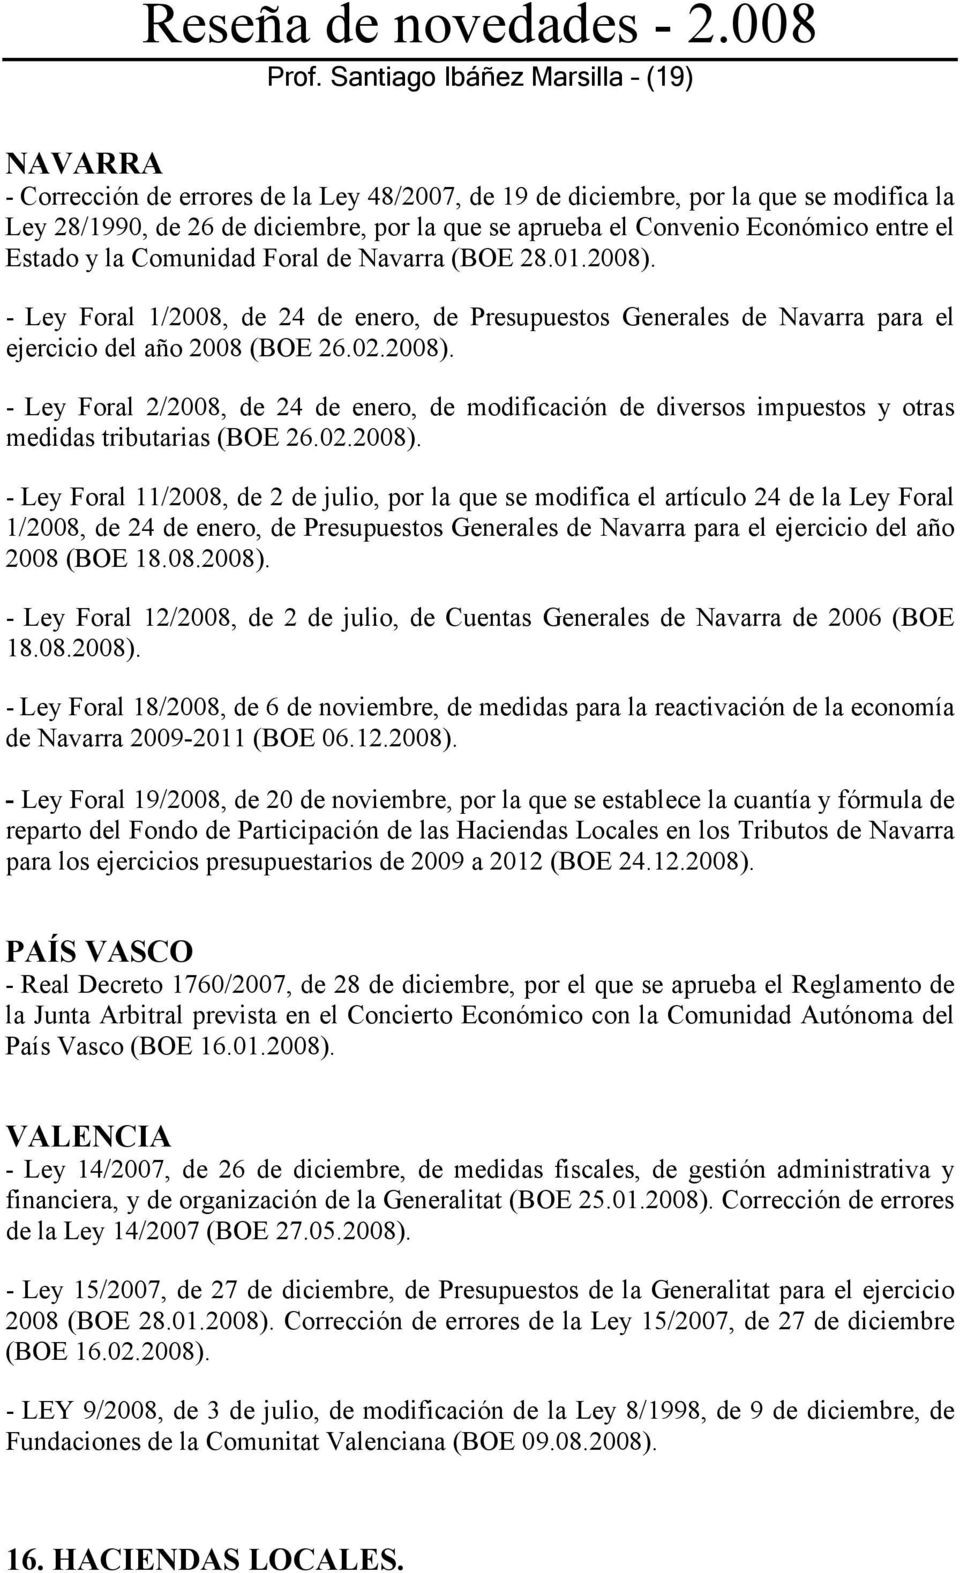 02.2008). - Ley Foral 11/2008, de 2 de julio, por la que se modifica el artículo 24 de la Ley Foral 1/2008, de 24 de enero, de Presupuestos Generales de Navarra para el ejercicio del año 2008 (BOE 18.